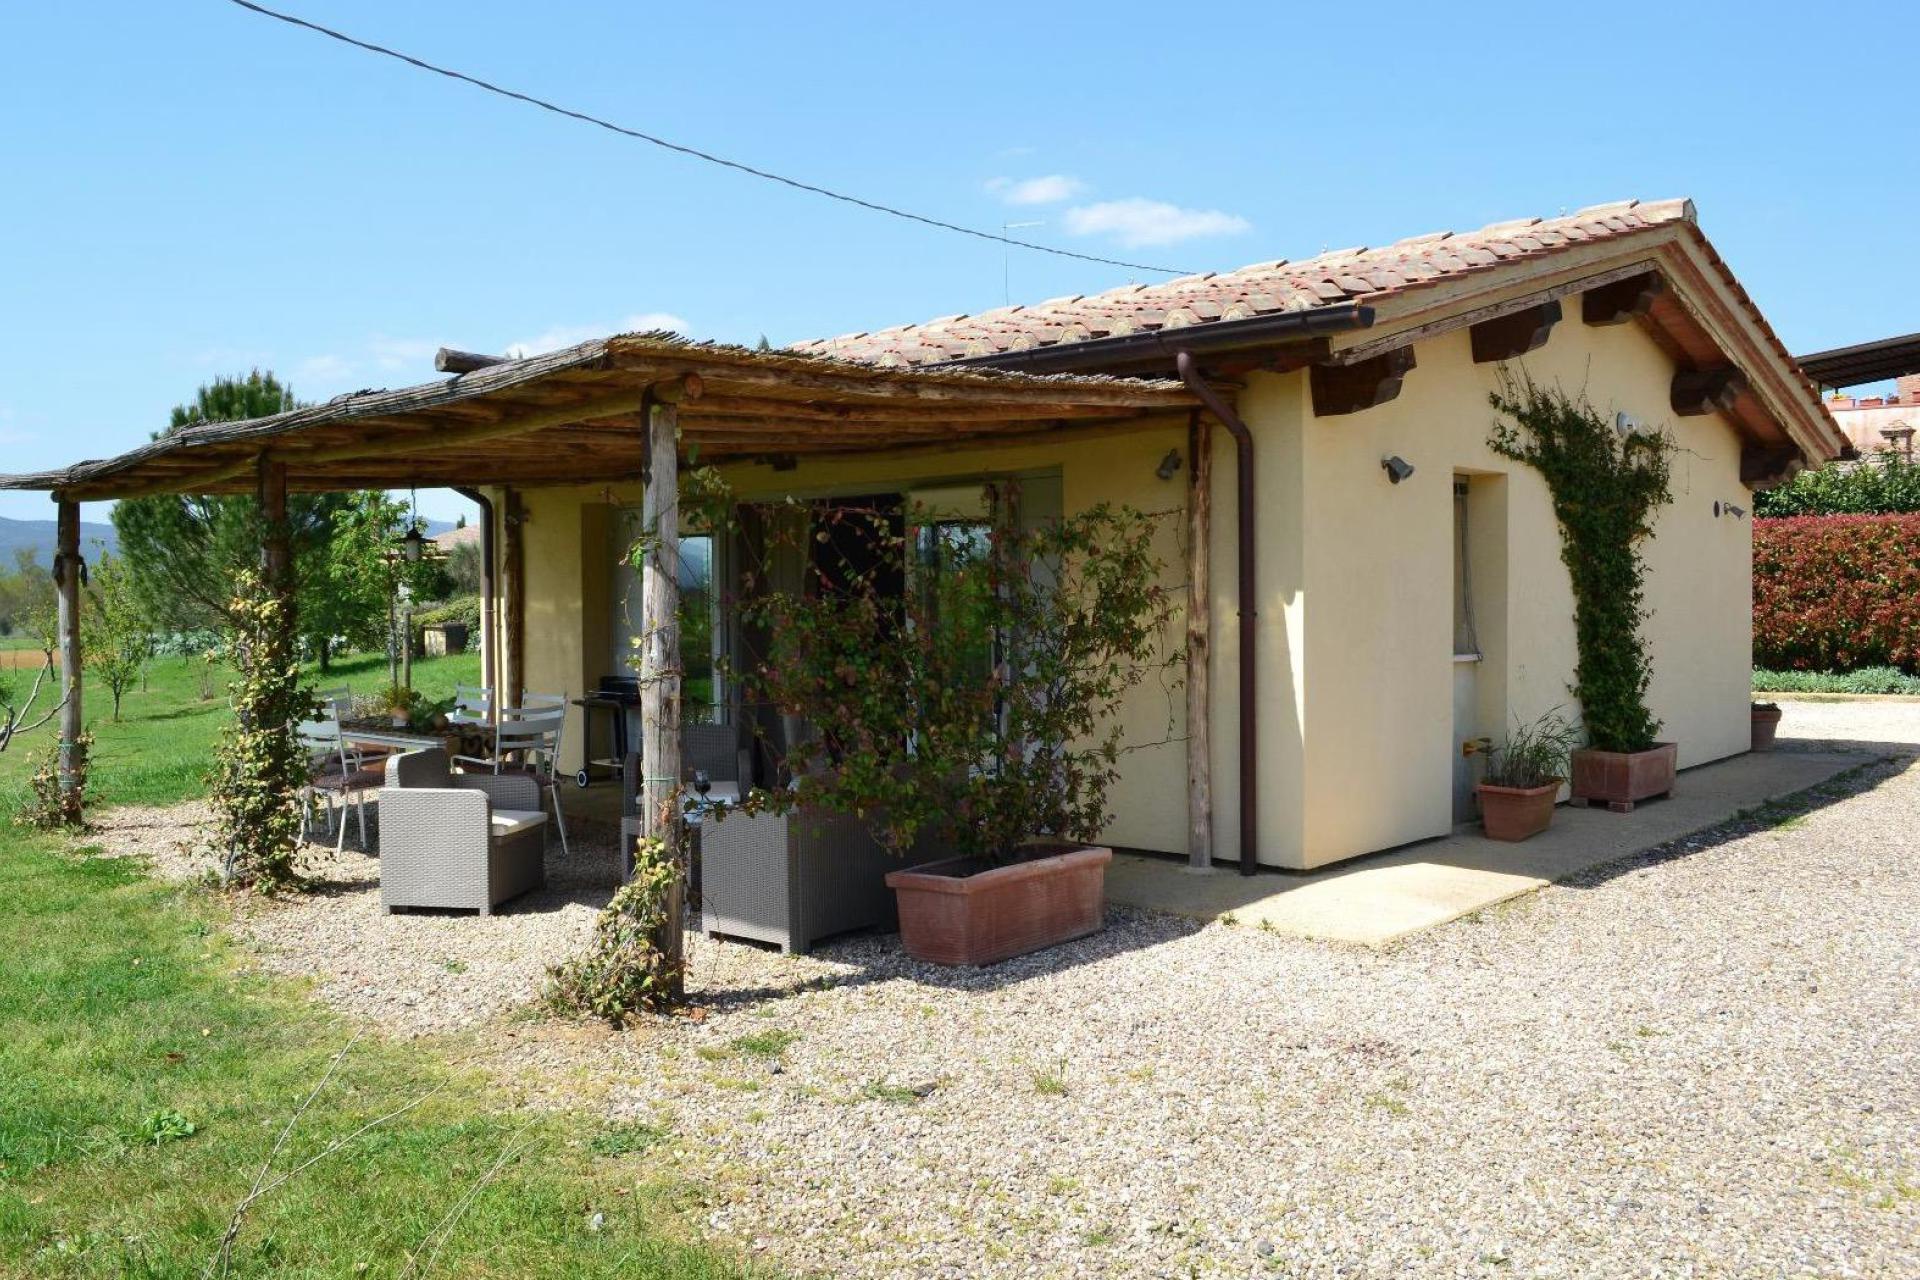 Agriturismo Toskana 8 Ferienwohnungen und 1 Ferienhaus in ländlicher Umgebung bei Siena